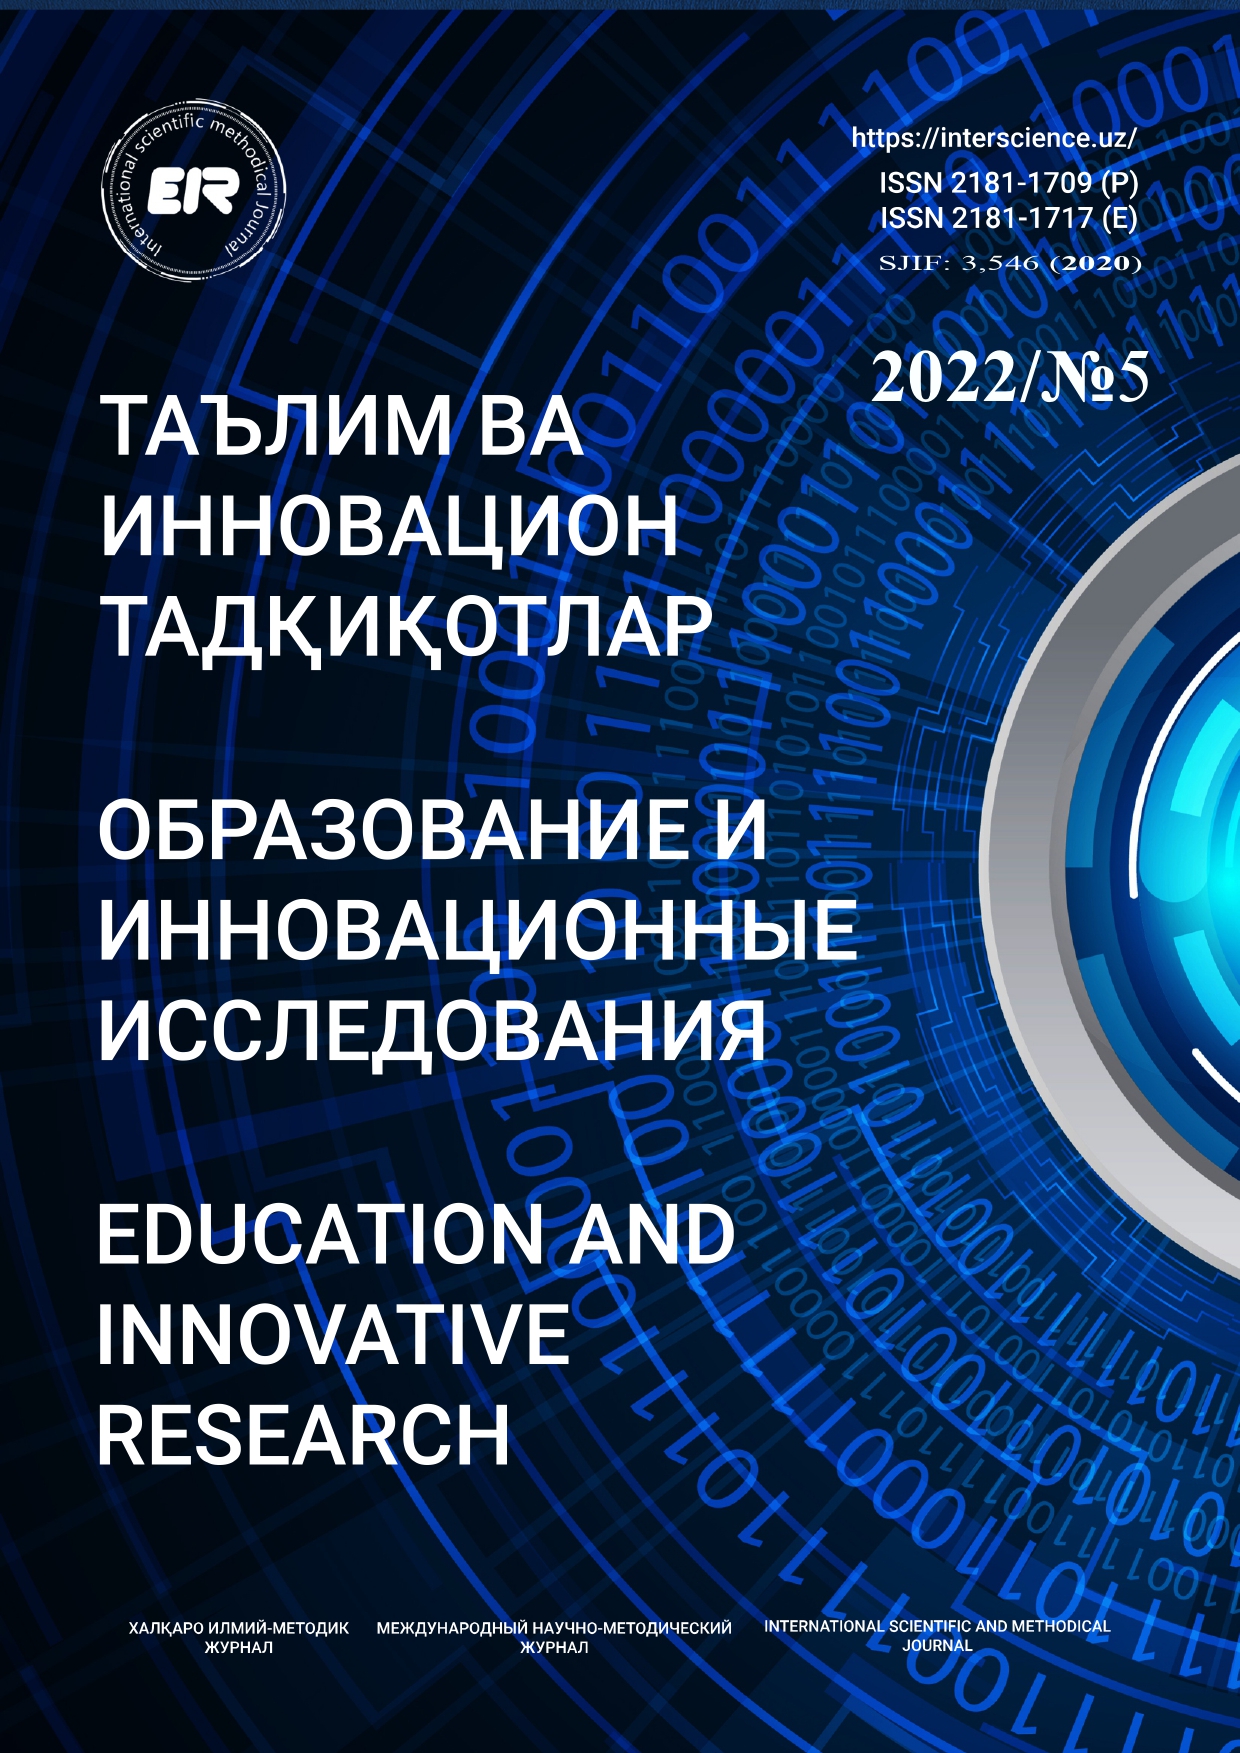 					Показать № 5 (2022): Образование и инновационные исследования
				